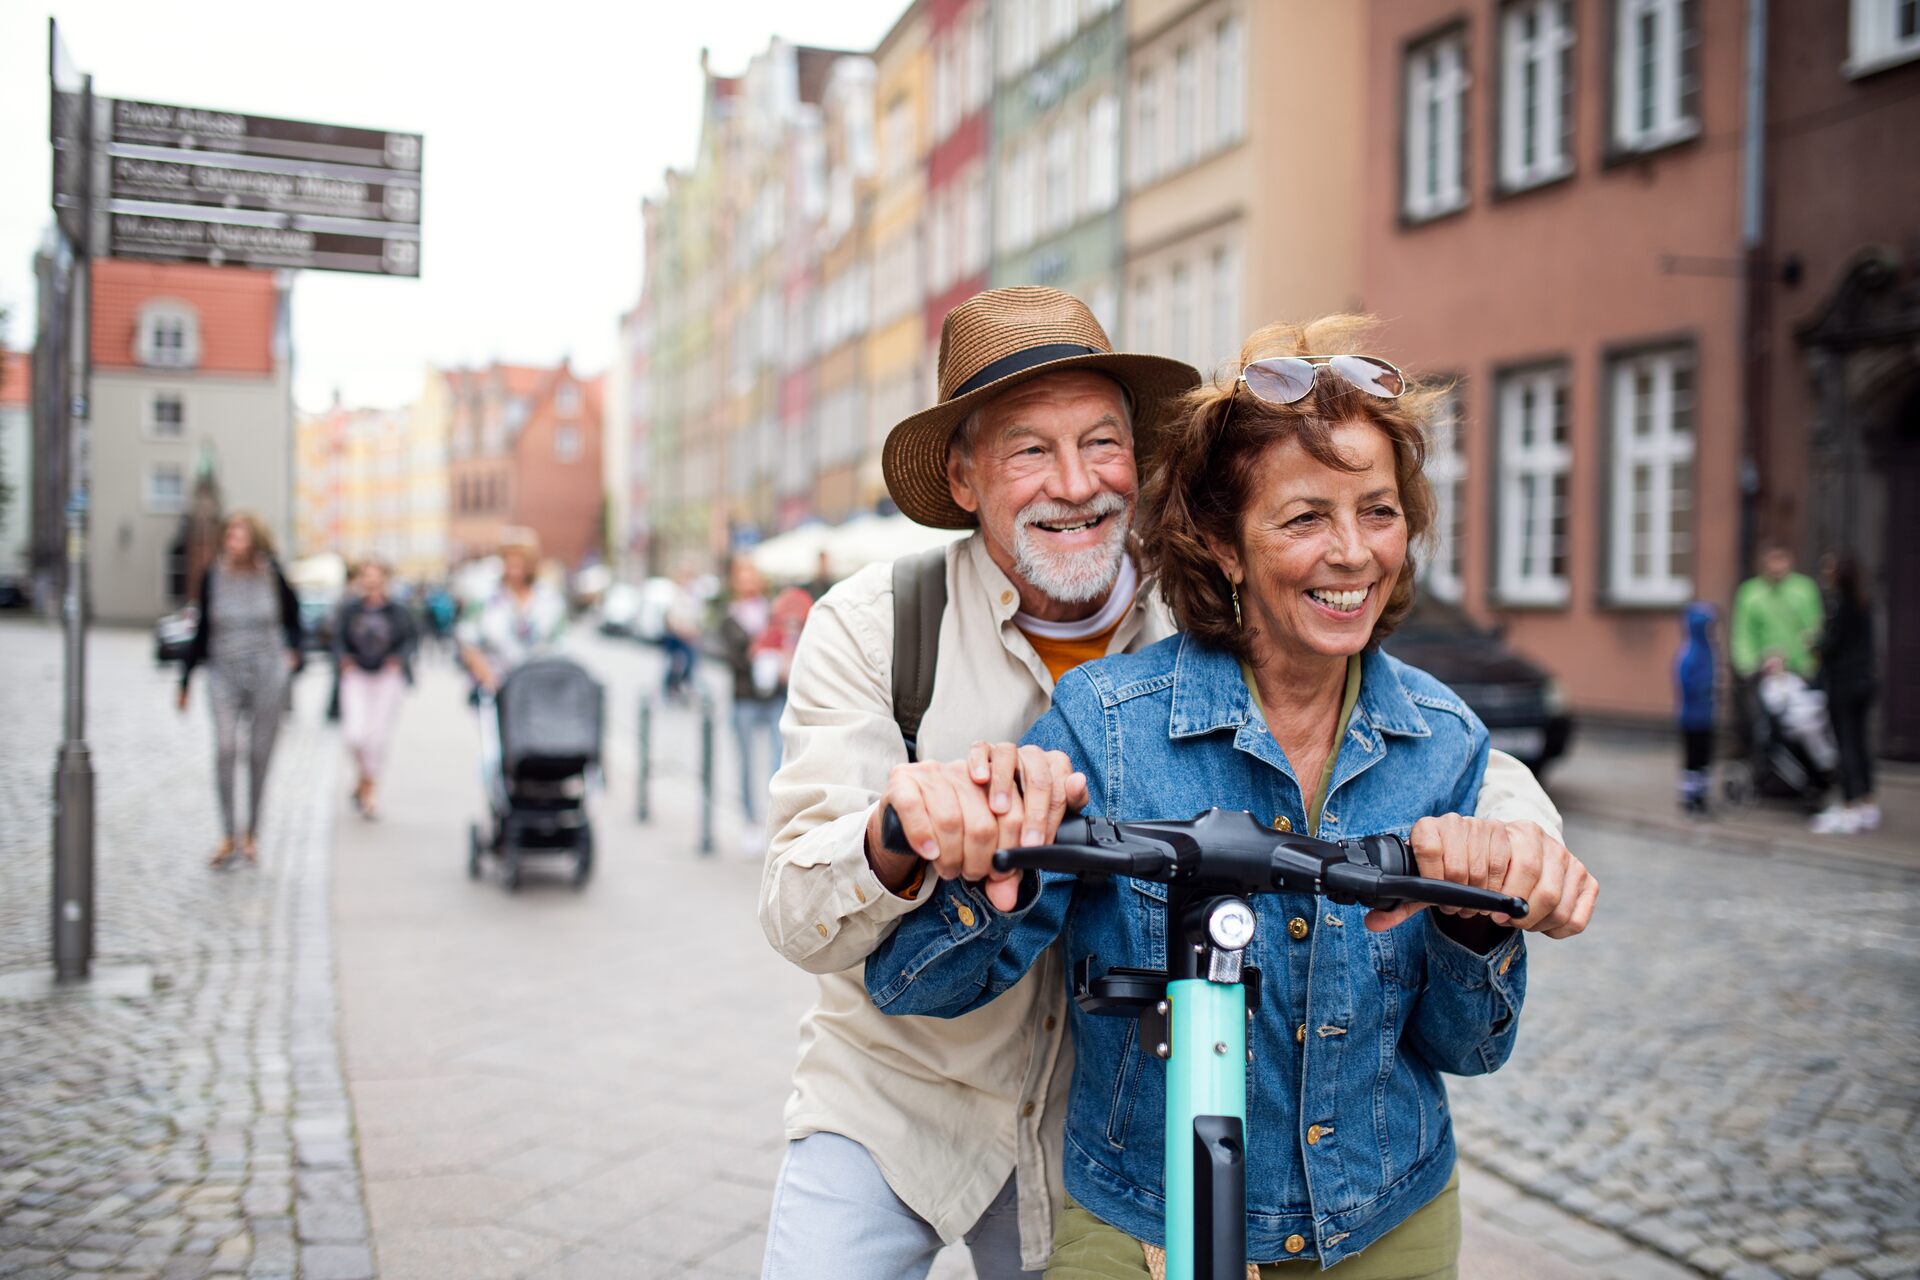 Mobilità dolce: il cattivo esempio di due persone anziane circolanti in città a bordo dello stesso monopattino